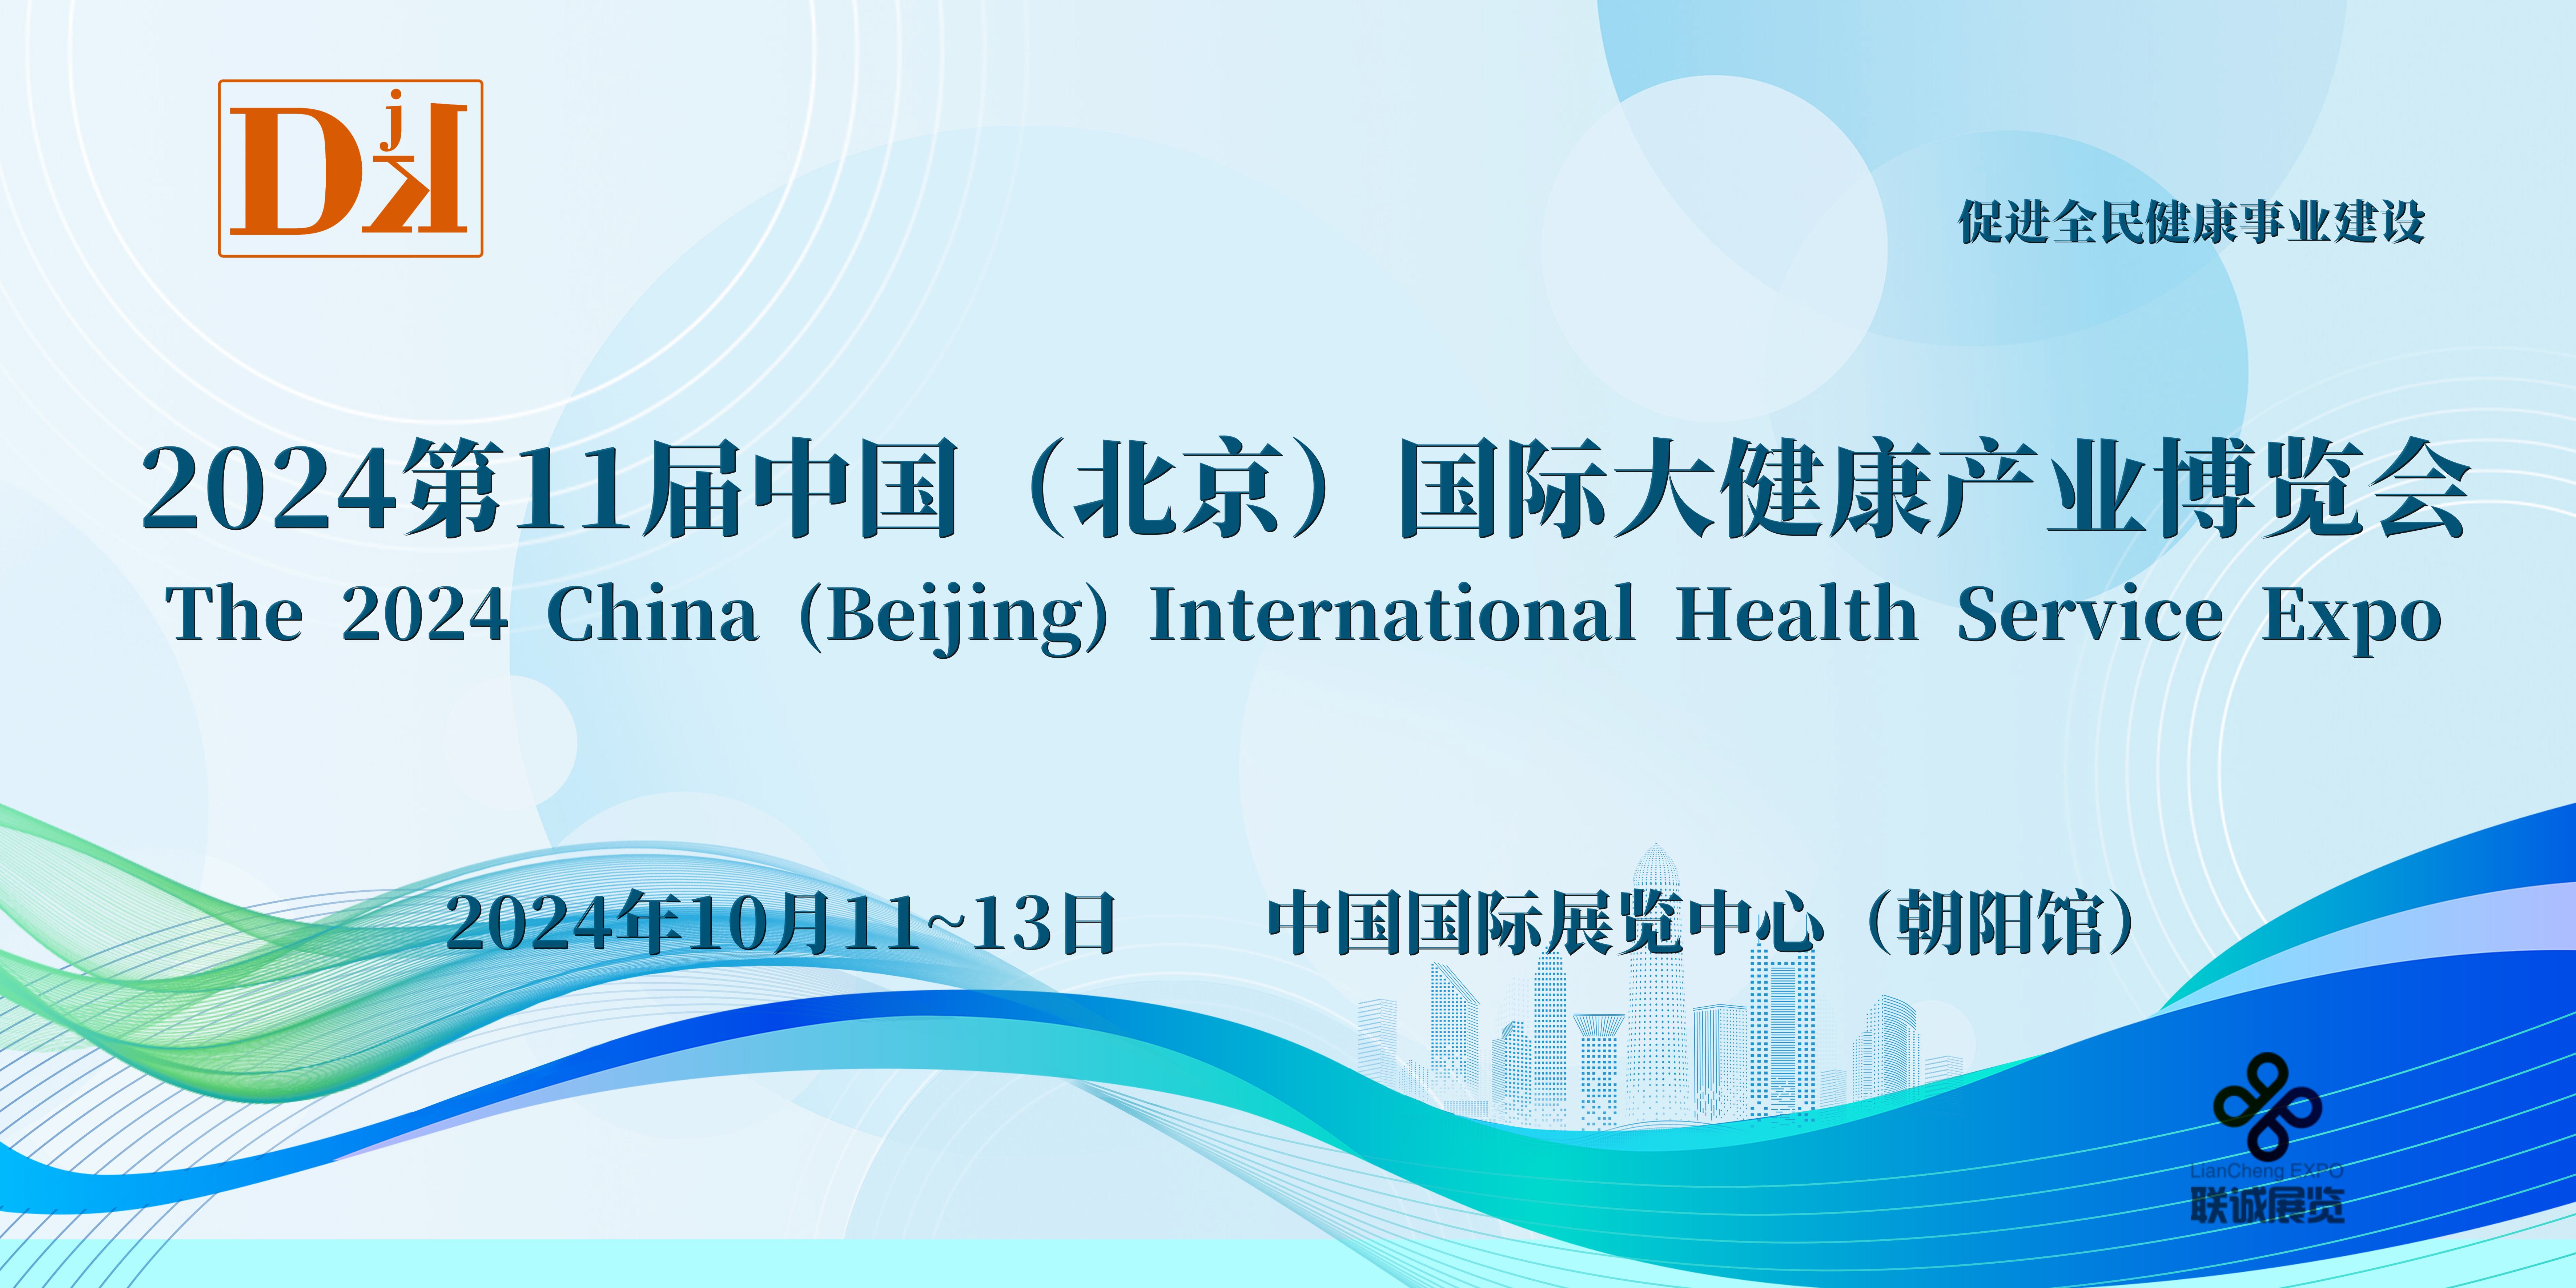 到2026年，北京医药健康产业总规模将达到1.25万亿元